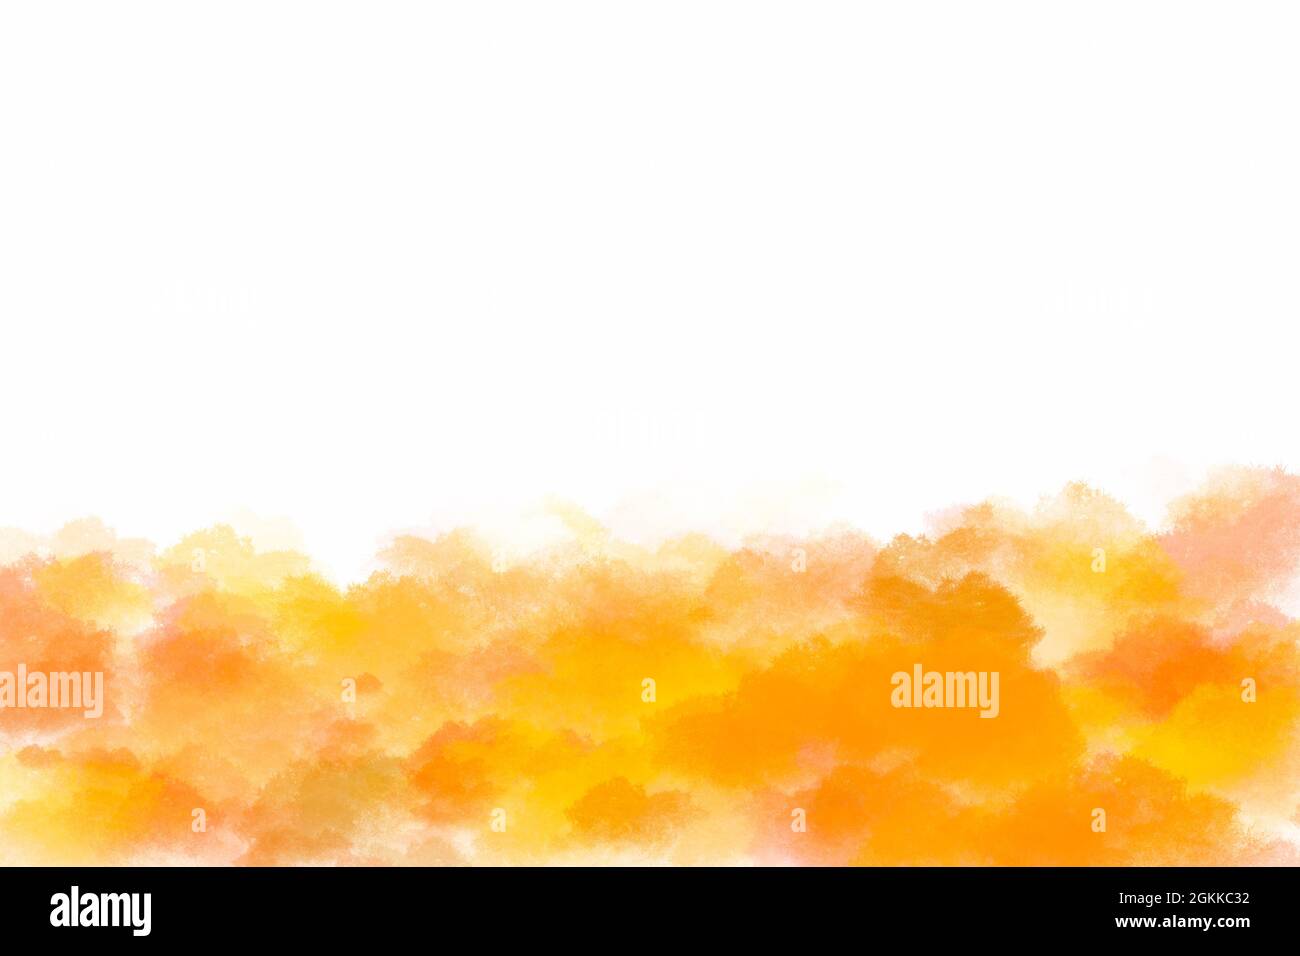 Illustration de la forêt d'automne, feuilles jaune et orange, peinture d'aquarelle numérique pour le concept de la saison d'automne, espace blanc pour la copie et le design, horizontal Banque D'Images